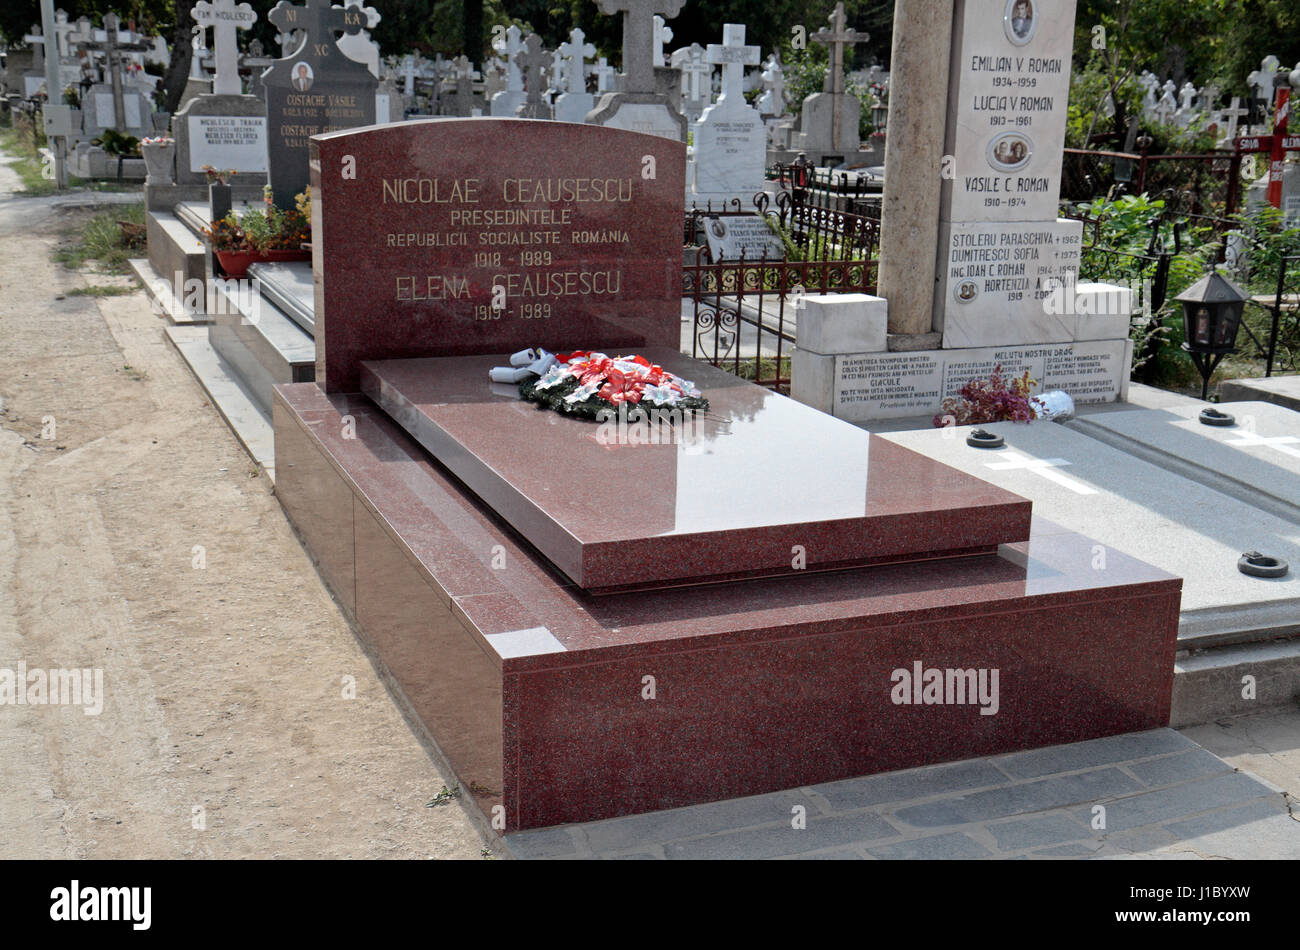 La tombe de Nicolae et Elena Ceausescu, la Roumanie l'ancien dictateur pendant l'ère communiste, cimetière Ghencea, Bucarest, Roumanie. Banque D'Images